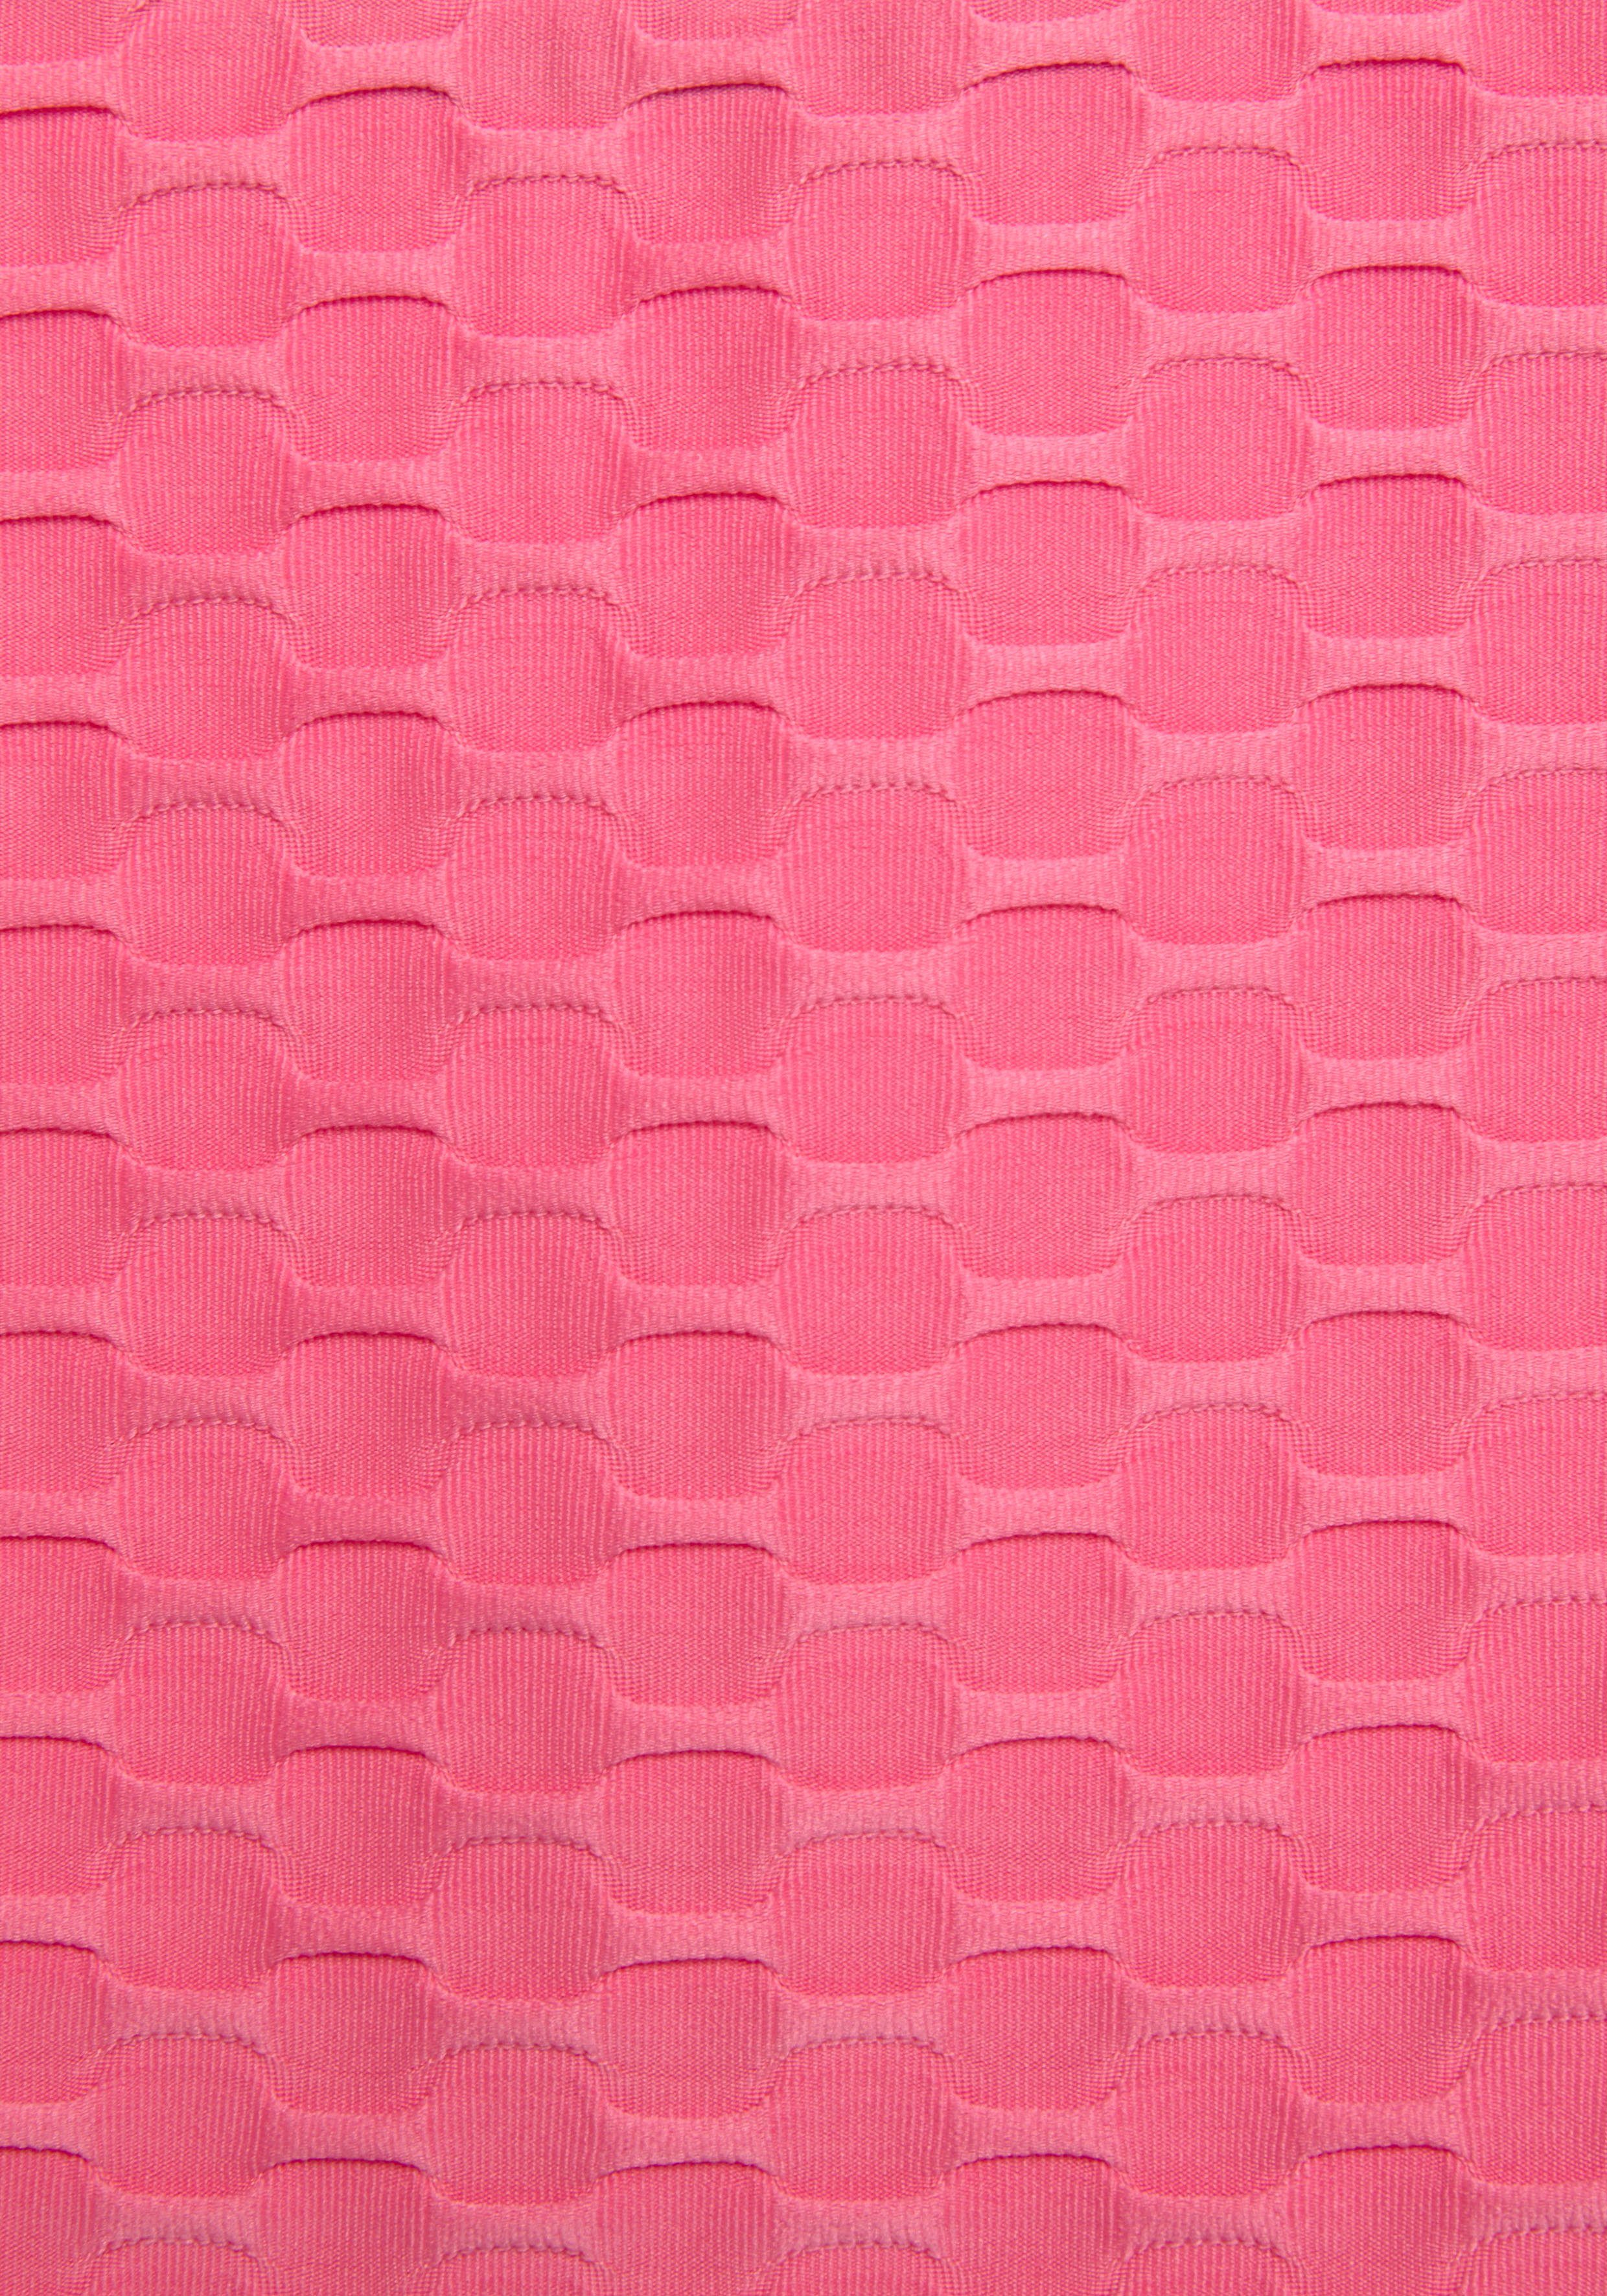 Mesheinsatz Wabendesign Bench. pink Funktionsshirt und mit